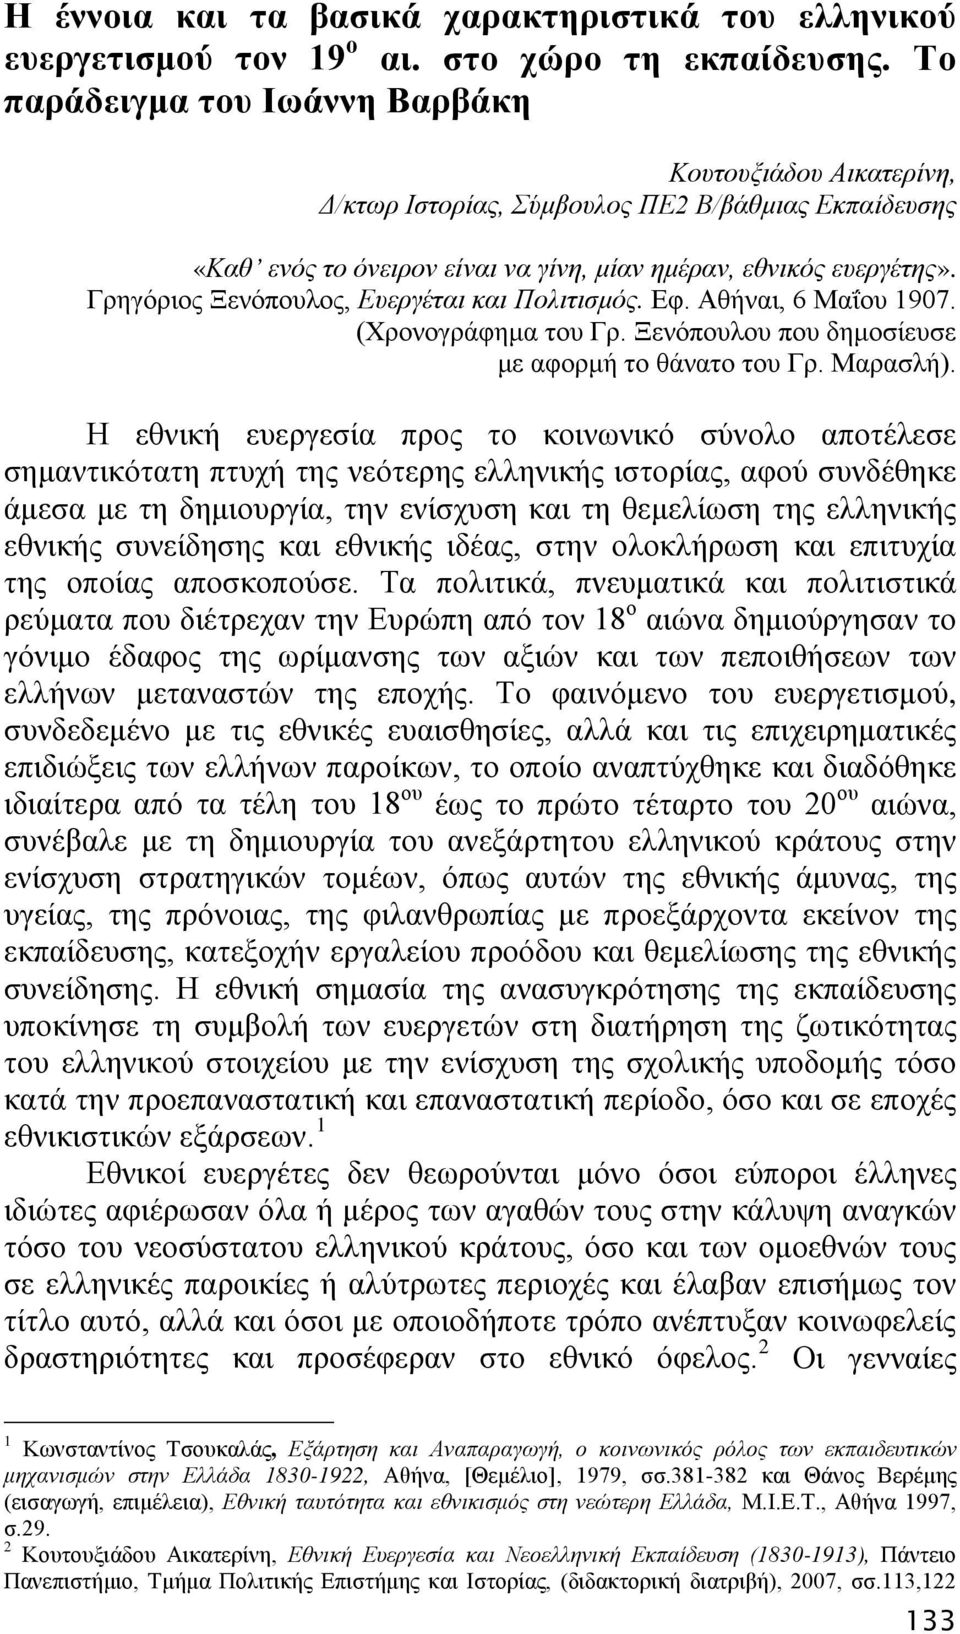 Γρηγόριος Ξενόπουλος, Ευεργέται και Πολιτισμός. Εφ. Αθήναι, 6 Μαΐου 1907. (Χρονογράφημα του Γρ. Ξενόπουλου που δημοσίευσε με αφορμή το θάνατο του Γρ. Μαρασλή).